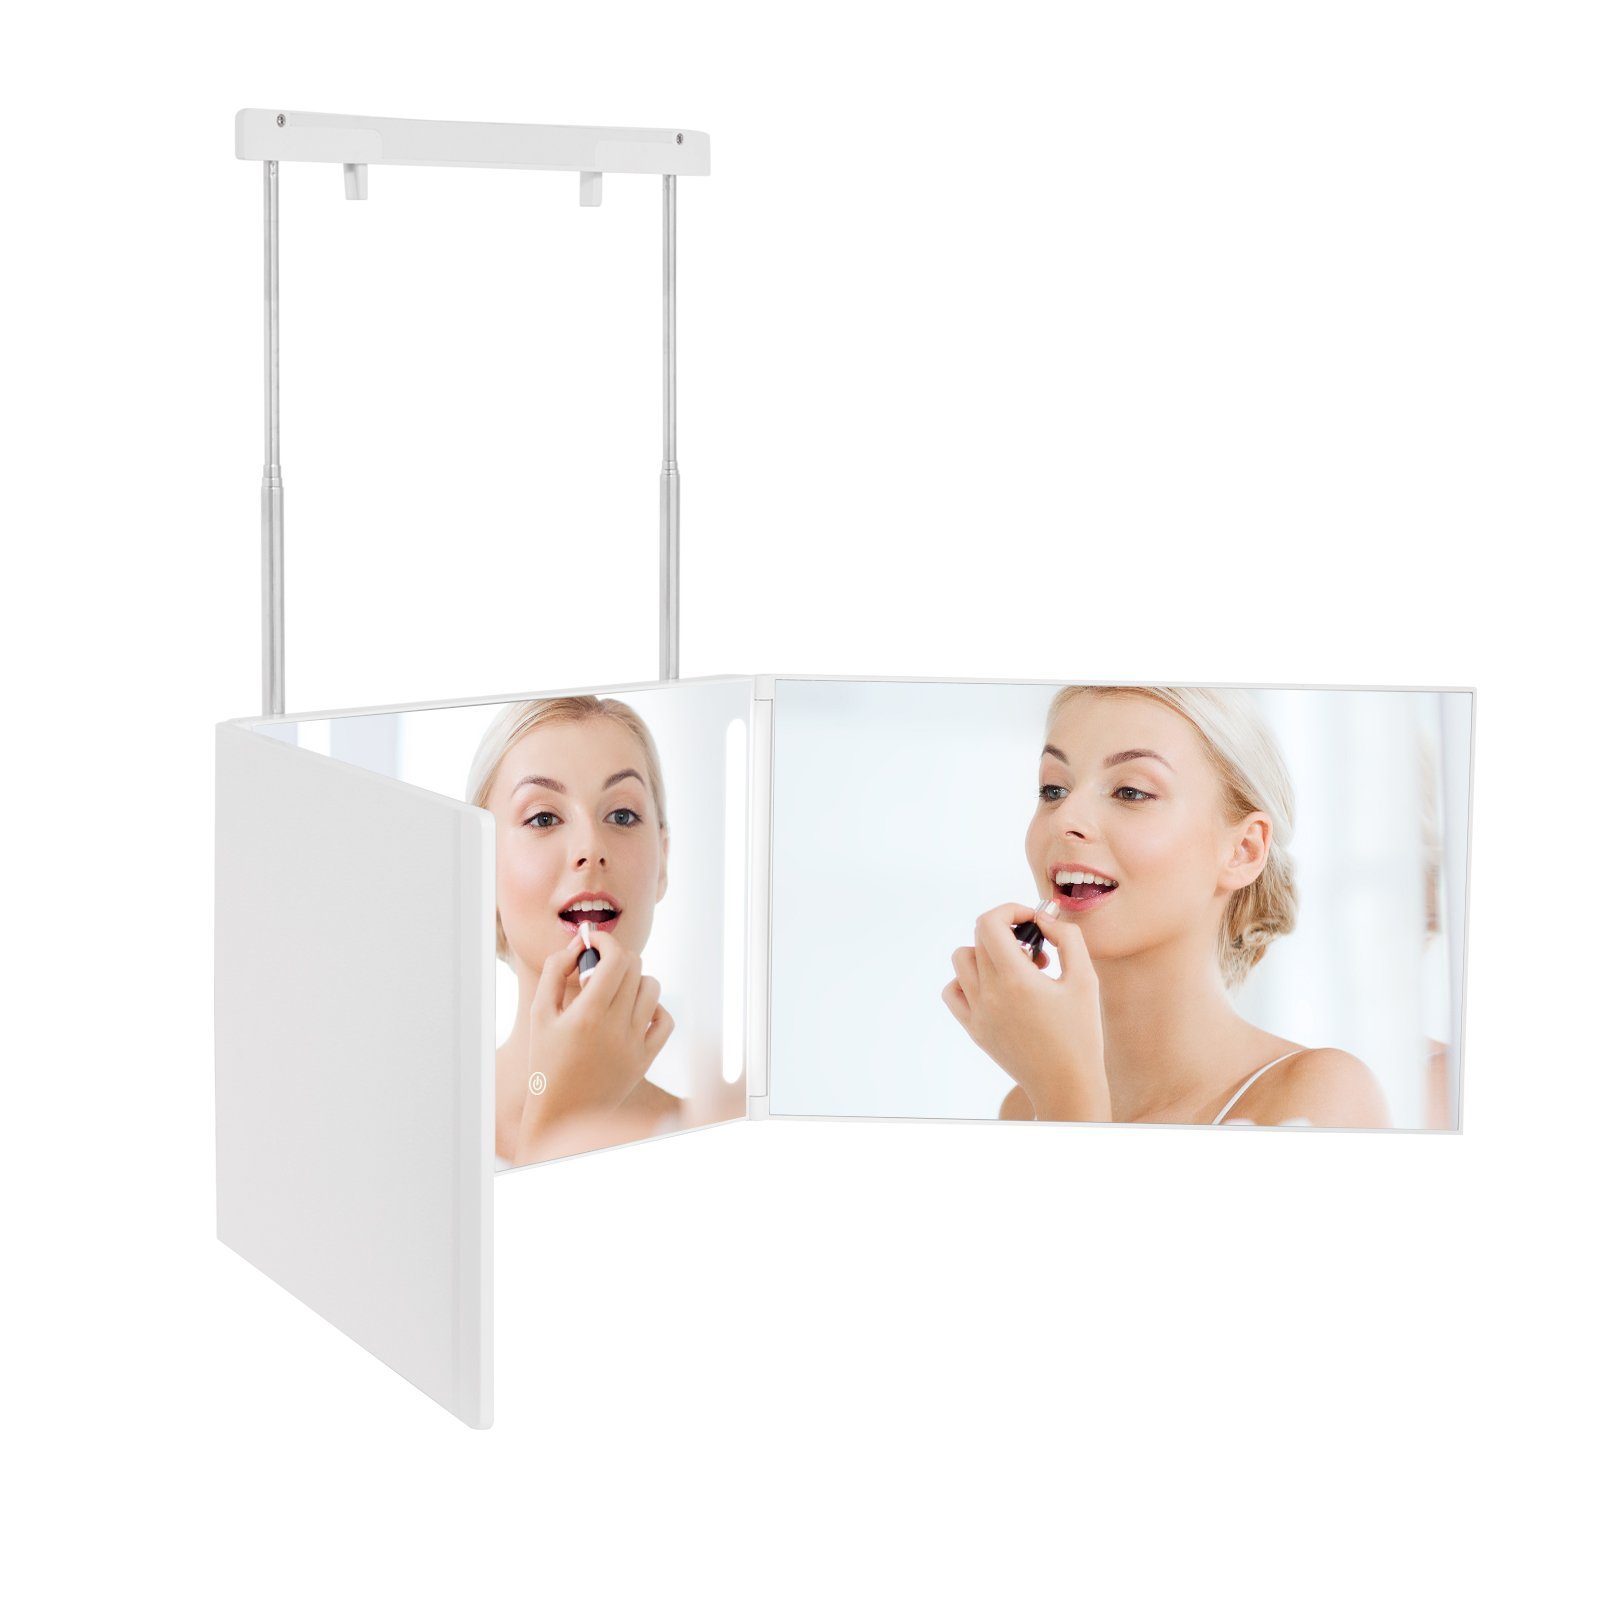 EMKE Kosmetikspiegel EMKE 360 Grad Spiegel Kosmetikspiegel Rasierspiegel mit Beleuchtung, mit 5X Vergrößerung Höhenverstellbaren für Make-up Weiß